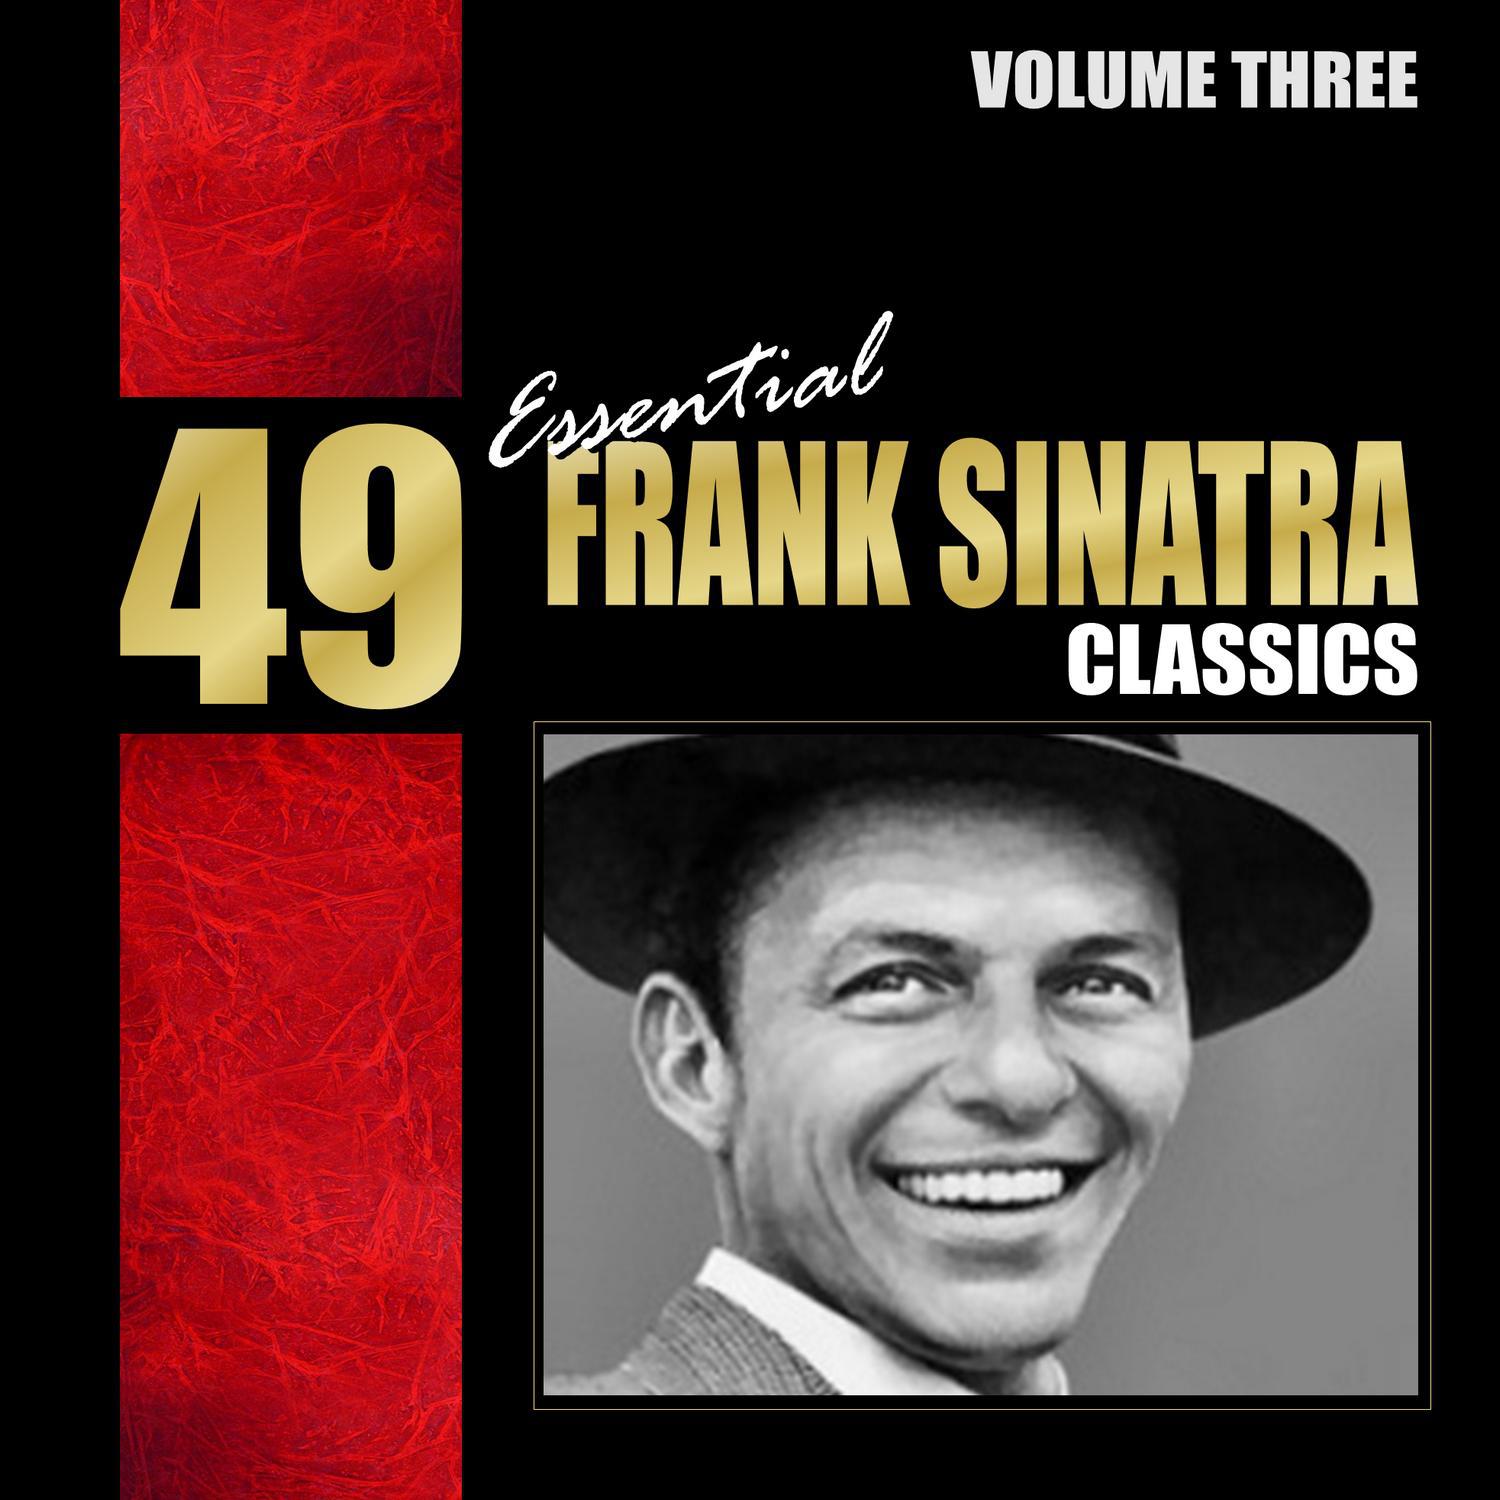 49 Essential Frank Sinatra Classics Vol. 2